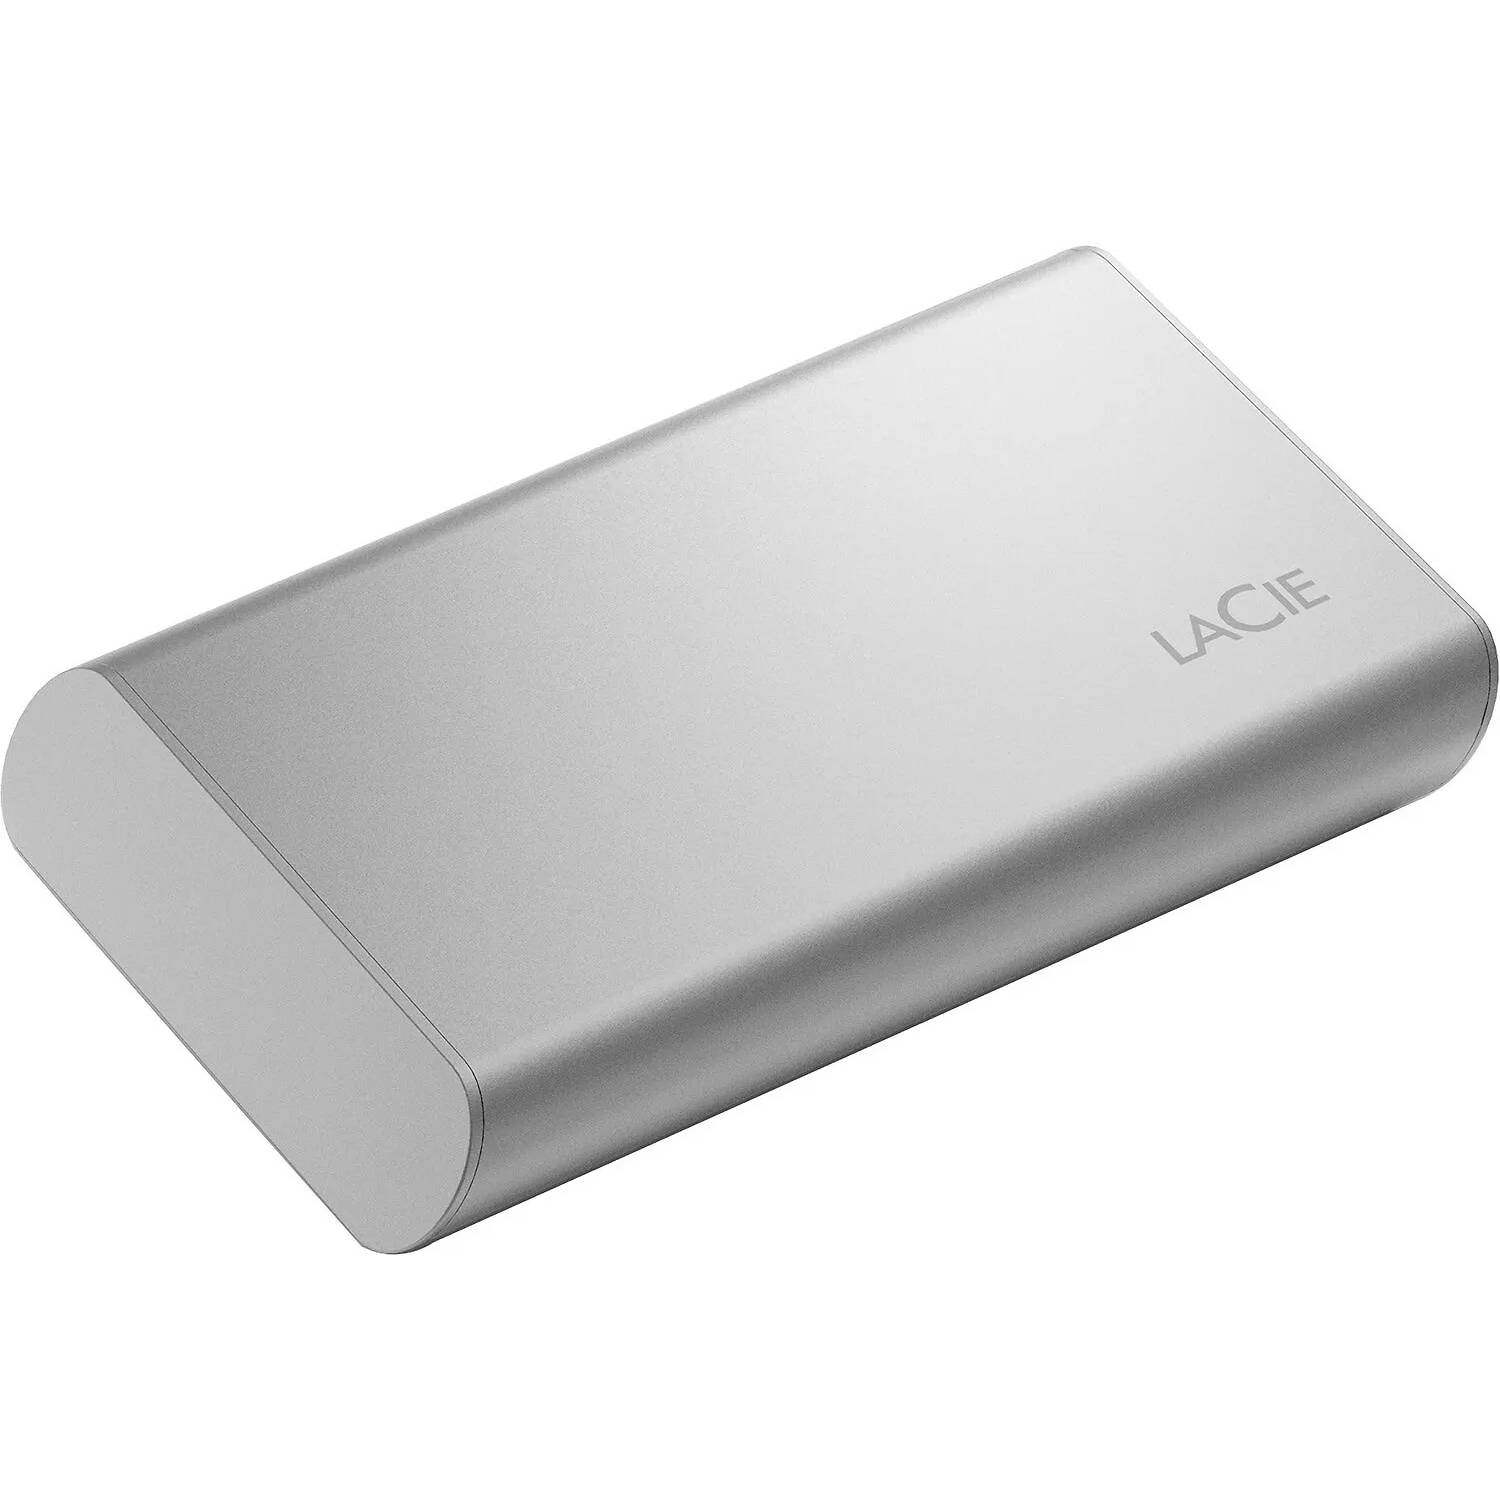 Фото — Внешний накопитель LaCie Portable SSD v2, 500 ГБ, серый